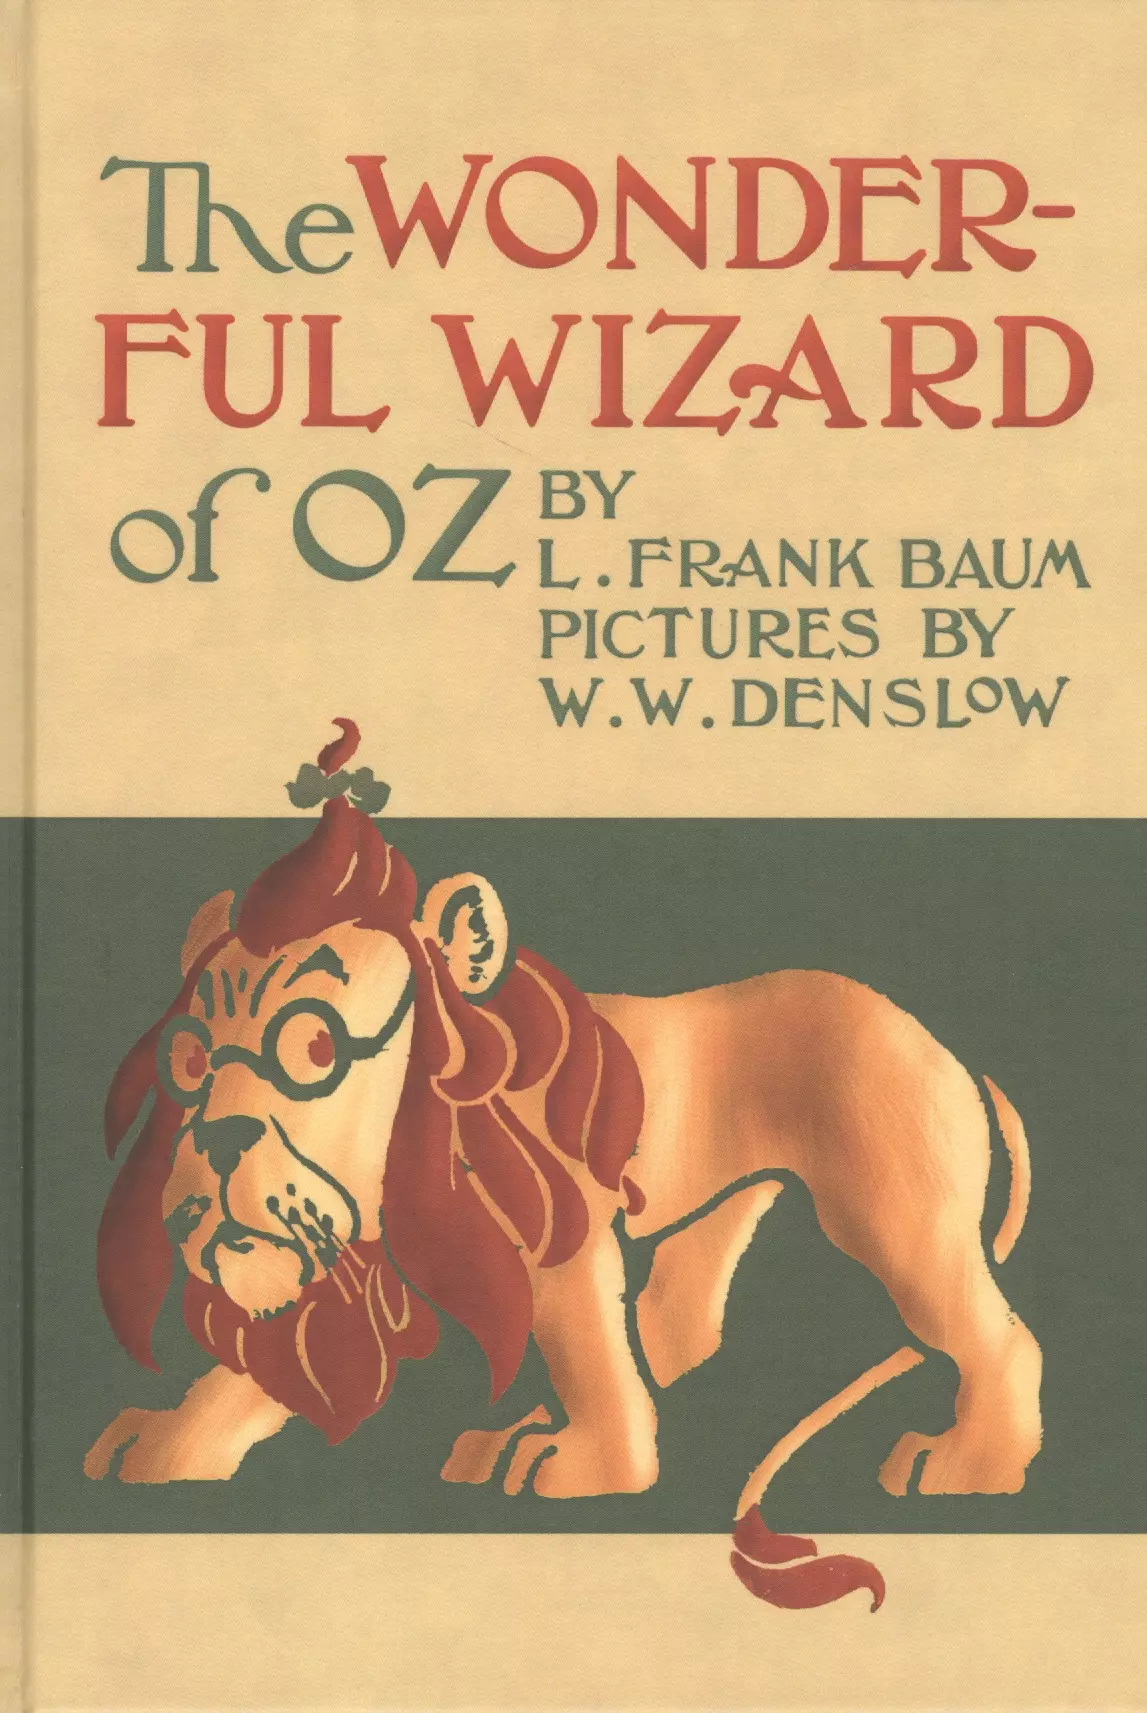 баум лаймен фрэнк лаймен the wonderful wizard of oz Баум Лаймен Фрэнк Лаймен The Wonderful wizard of Oz / Удивительный волшебник из страны Оз. Сказка на английском языке